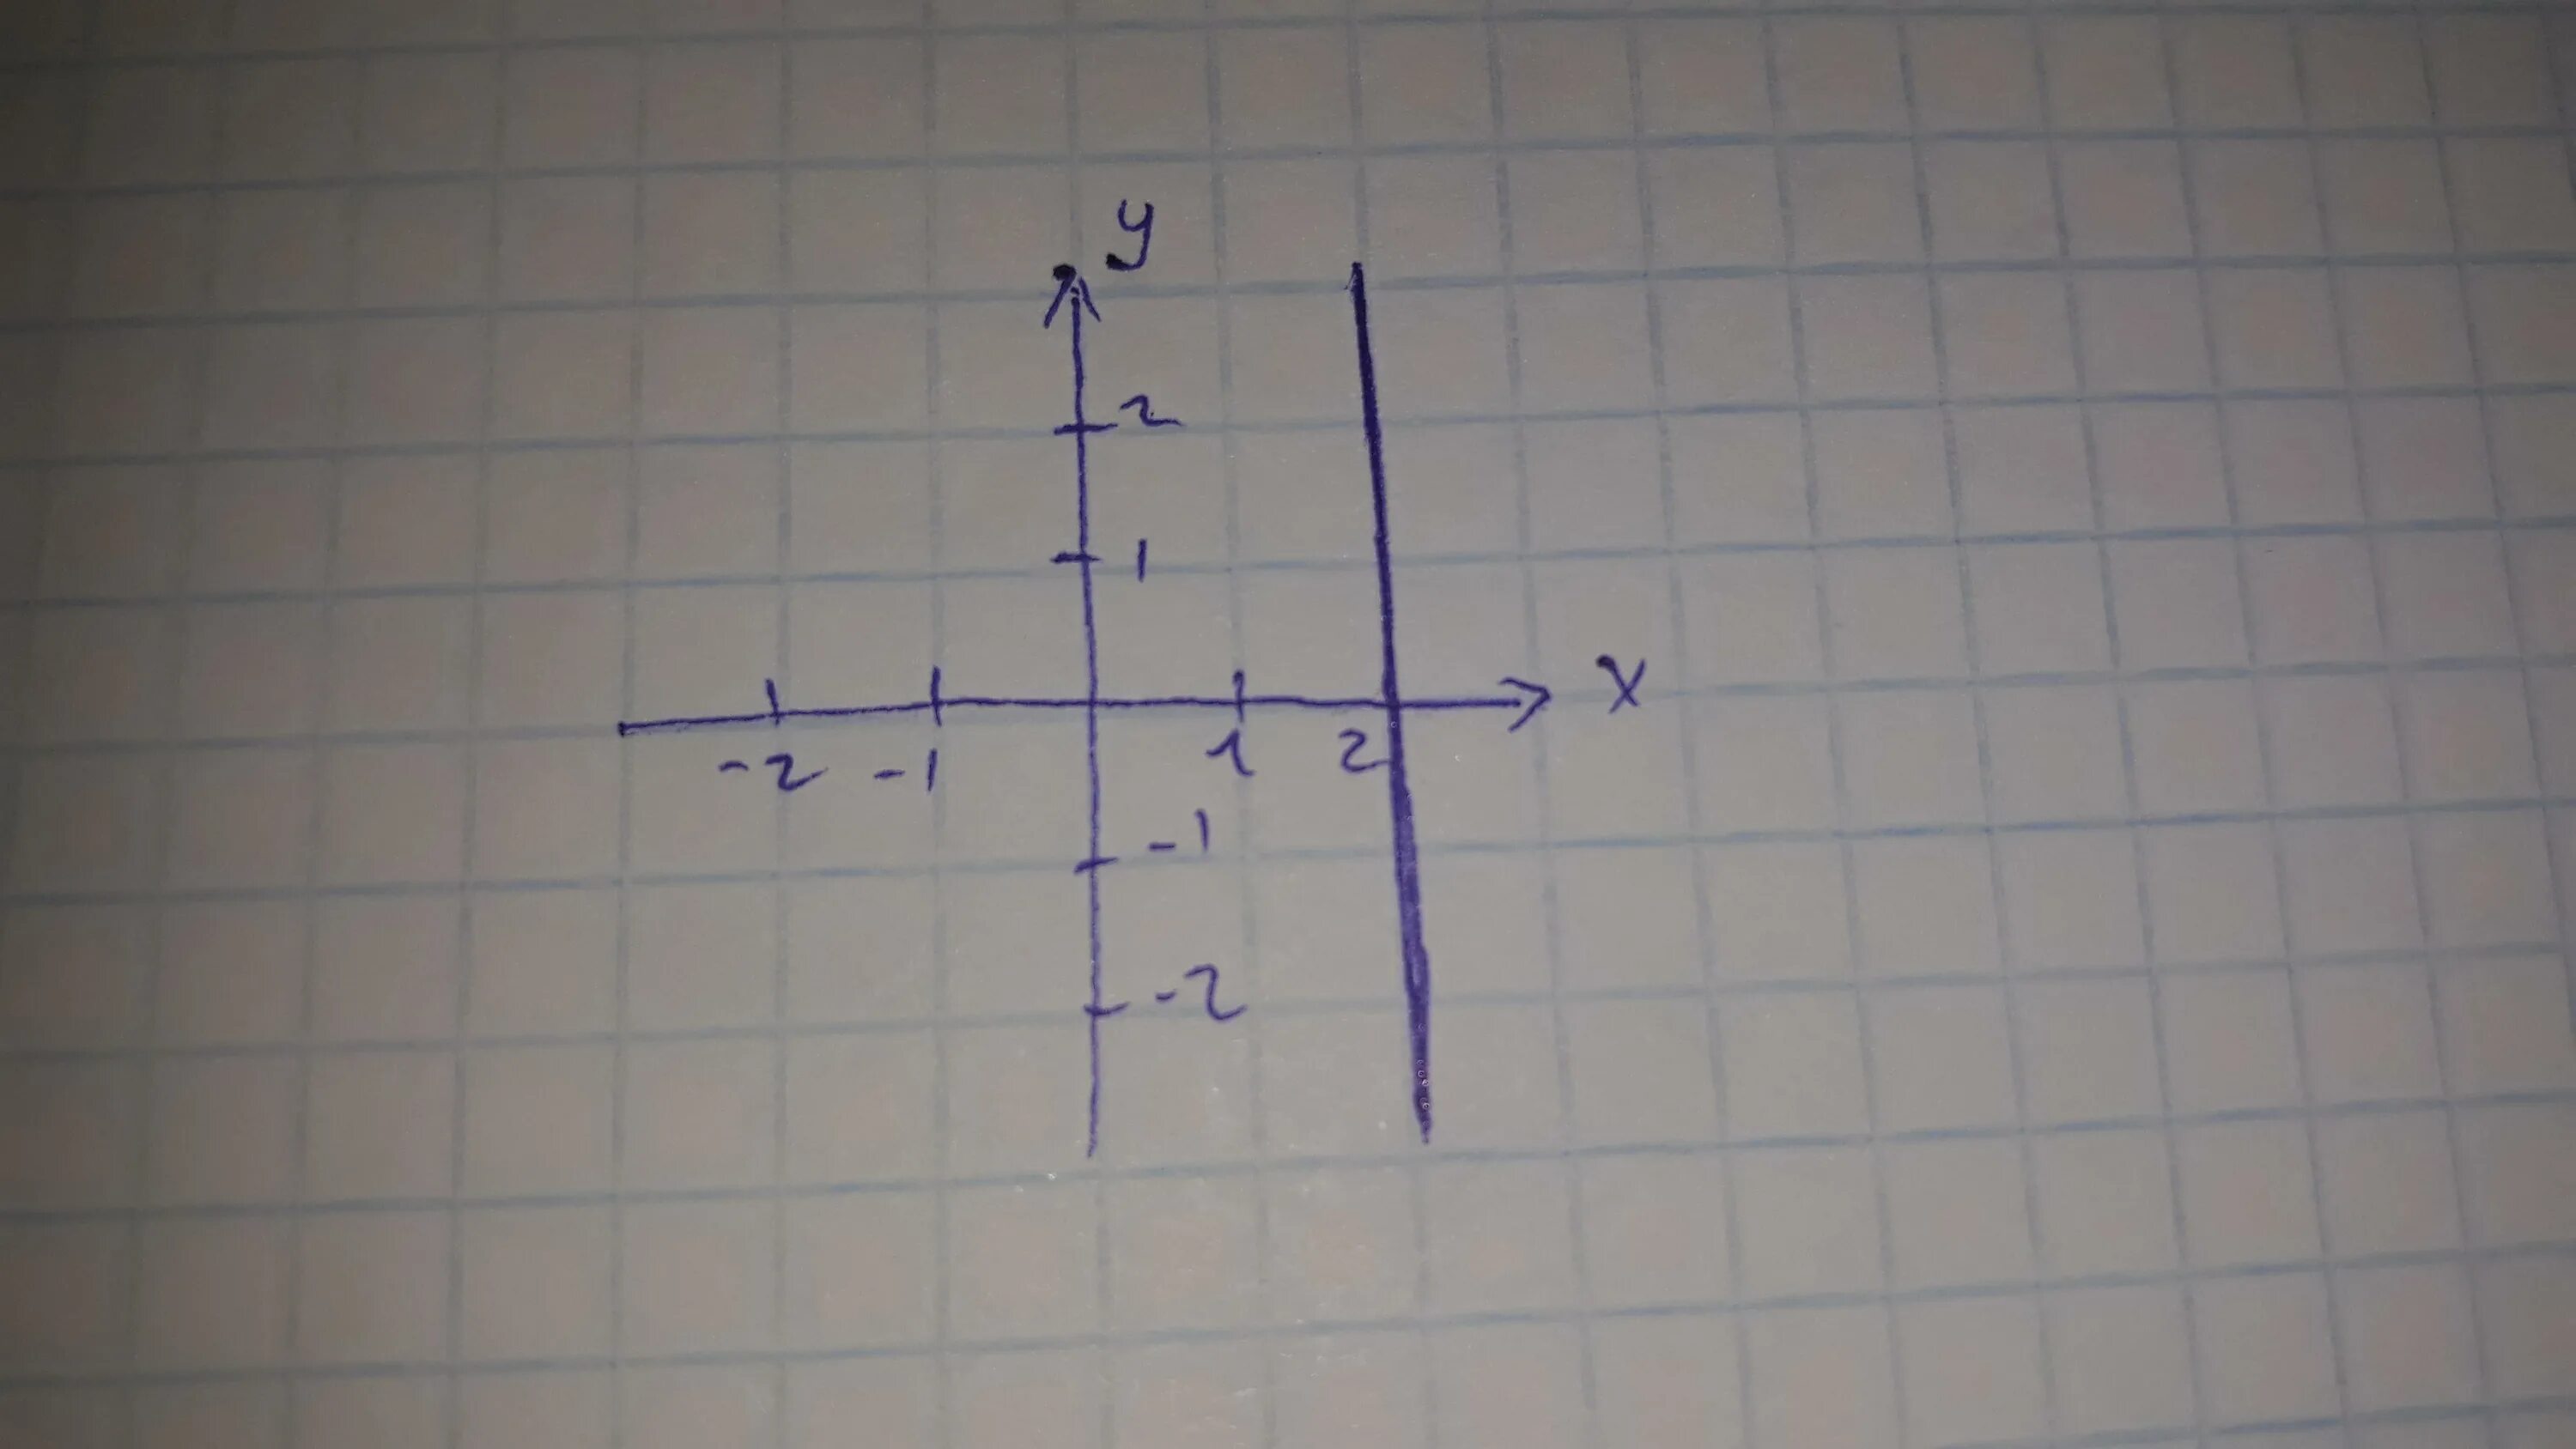 Изобразить на координатной плоскости. Изобразить на координатной плоскости ( x-2y) (x-7). Изобрази на координатной плоскости точки. Изобразите на координатной плоскости точки. Прямая 3х у 1 0